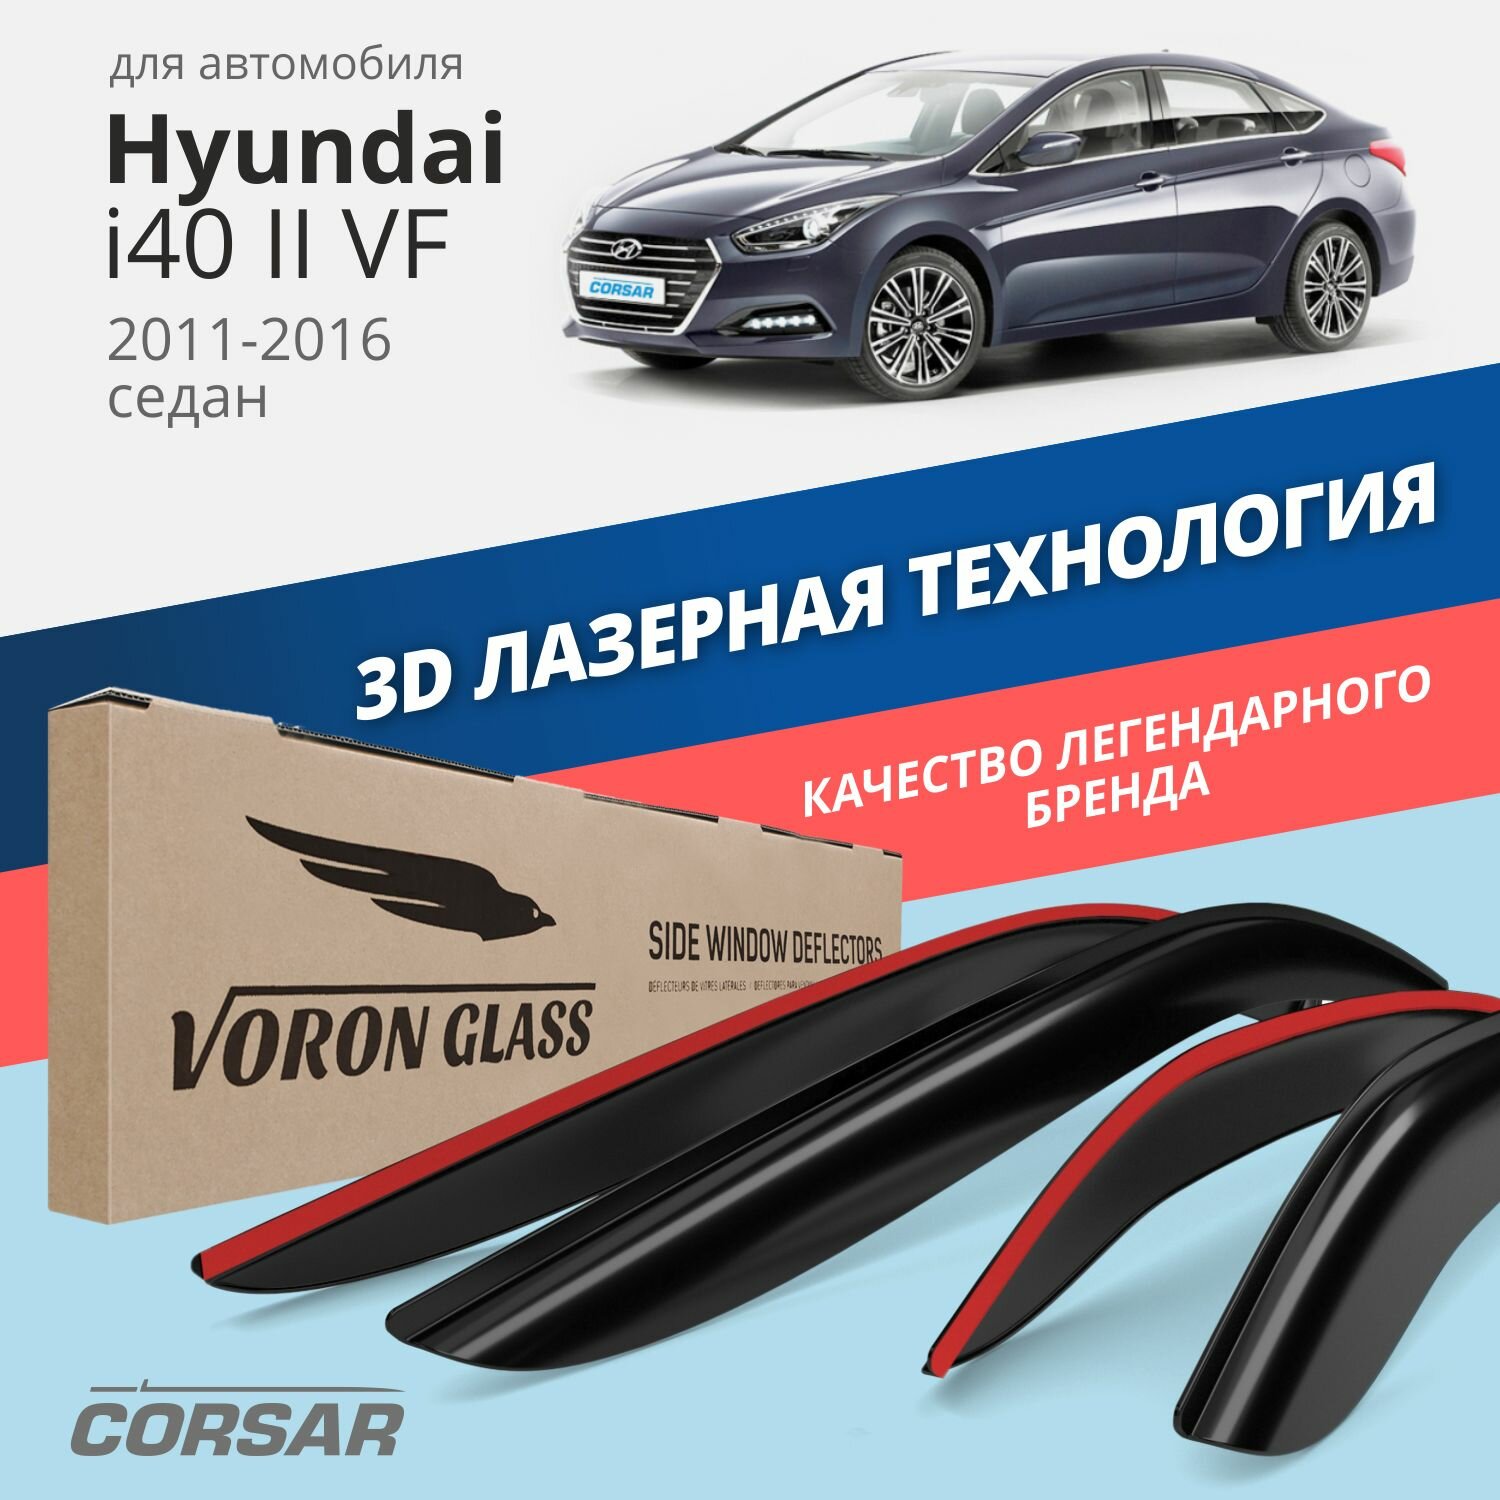 Дефлекторы окон Voron Glass серия Corsar для Hyundai i40 II (VF) 2011-2016 /седан накладные 4 шт.